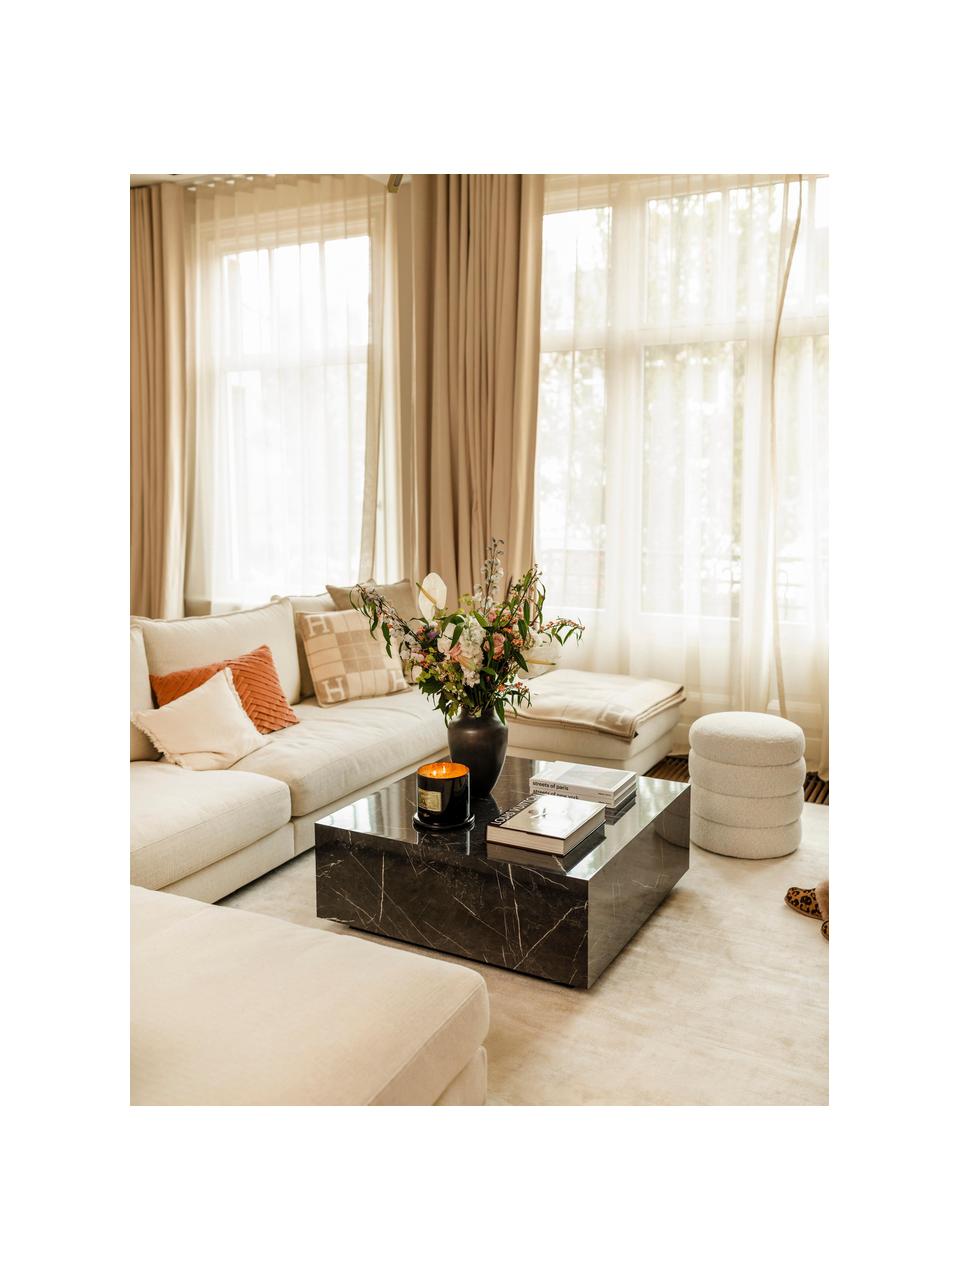 Table basse aspect marbre Lesley, MDF, enduit feuille mélaminée, Noir, aspect marbre, haute brillance, larg. 90 x prof. 90 cm